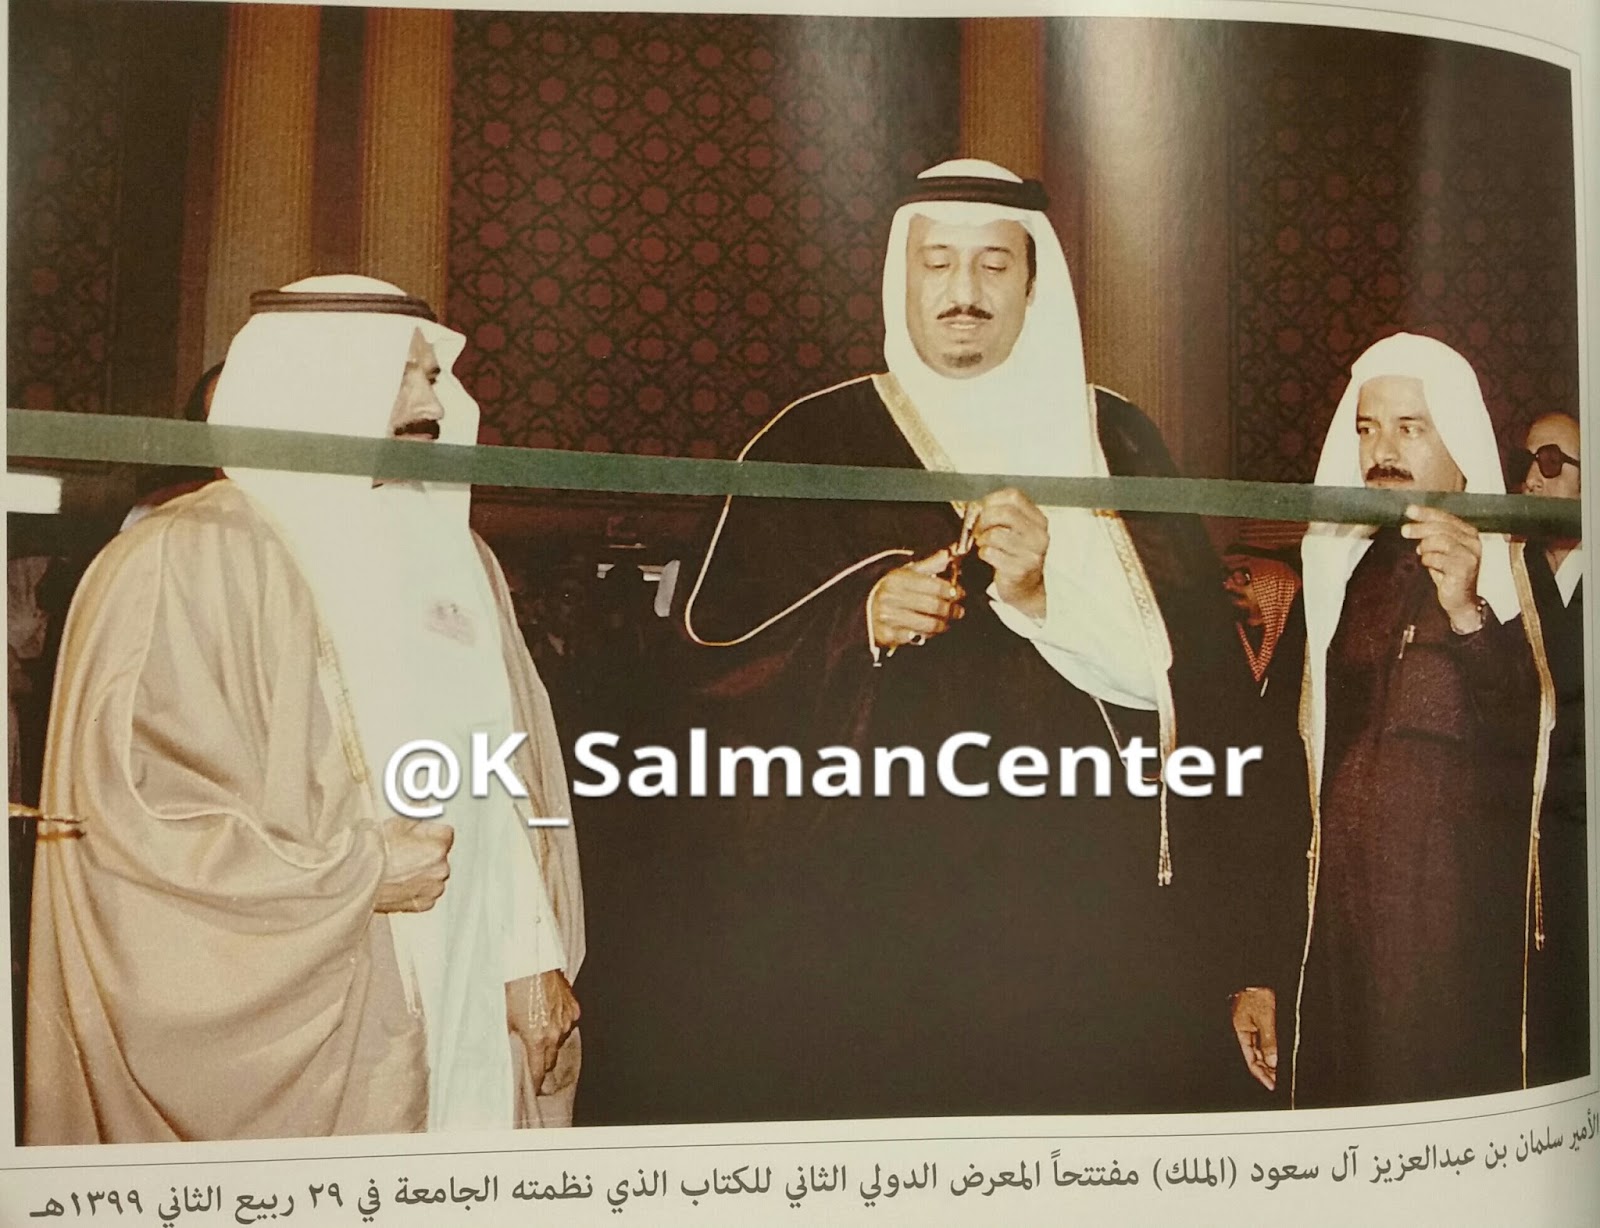 مركز الملك سلمان لدراسات تاريخ الجزيرة العربية وحضارتها معرض الكتاب 27 سنة في رحاب جامعة الملك سعود 1398 1425 هـ